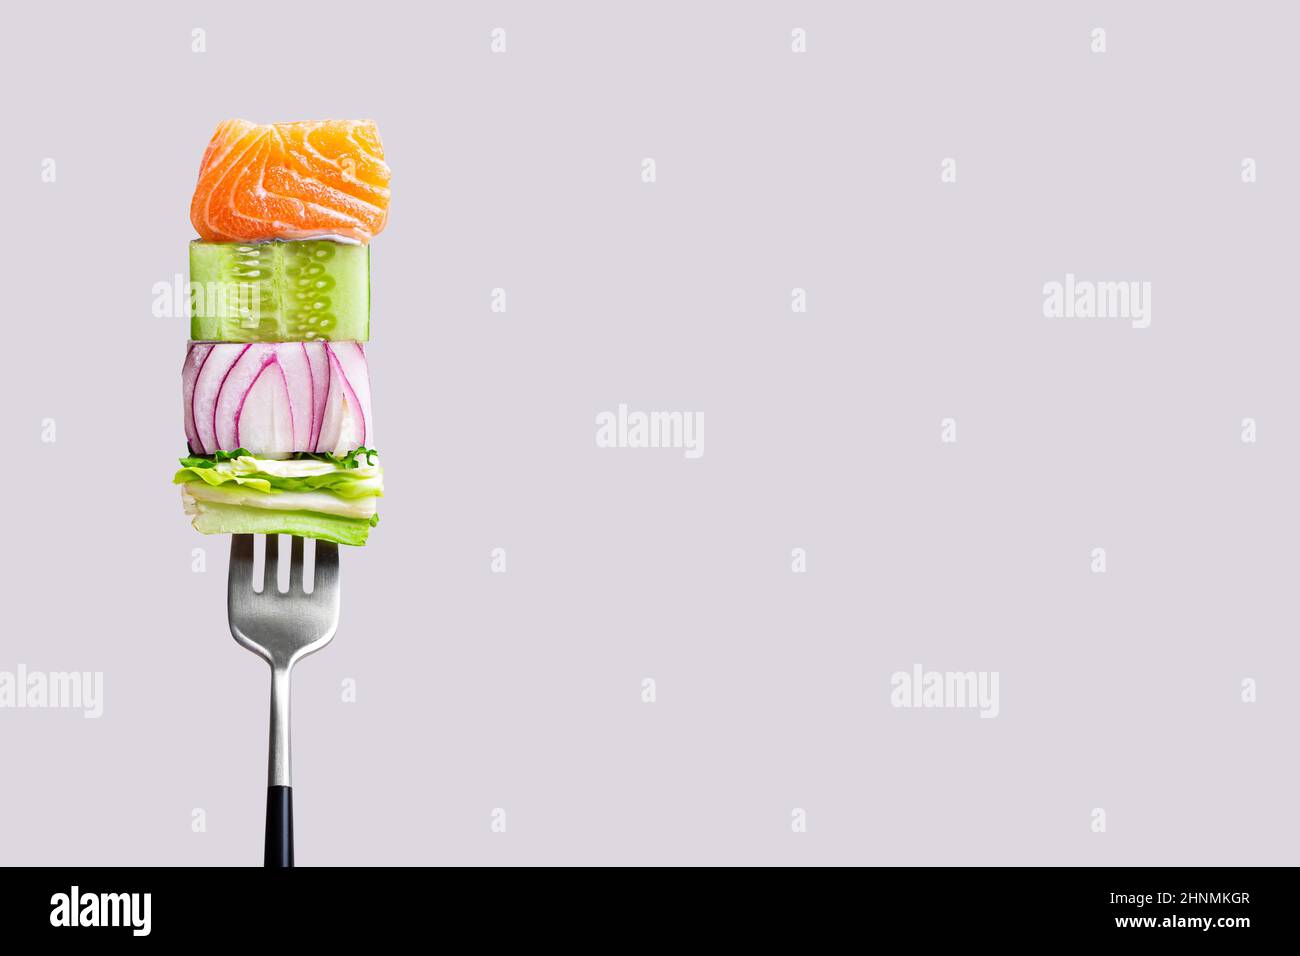 fourchette avec nourriture sur elle: délicieux filet de saumon, concombre, oignon, salade sur fond gris Banque D'Images